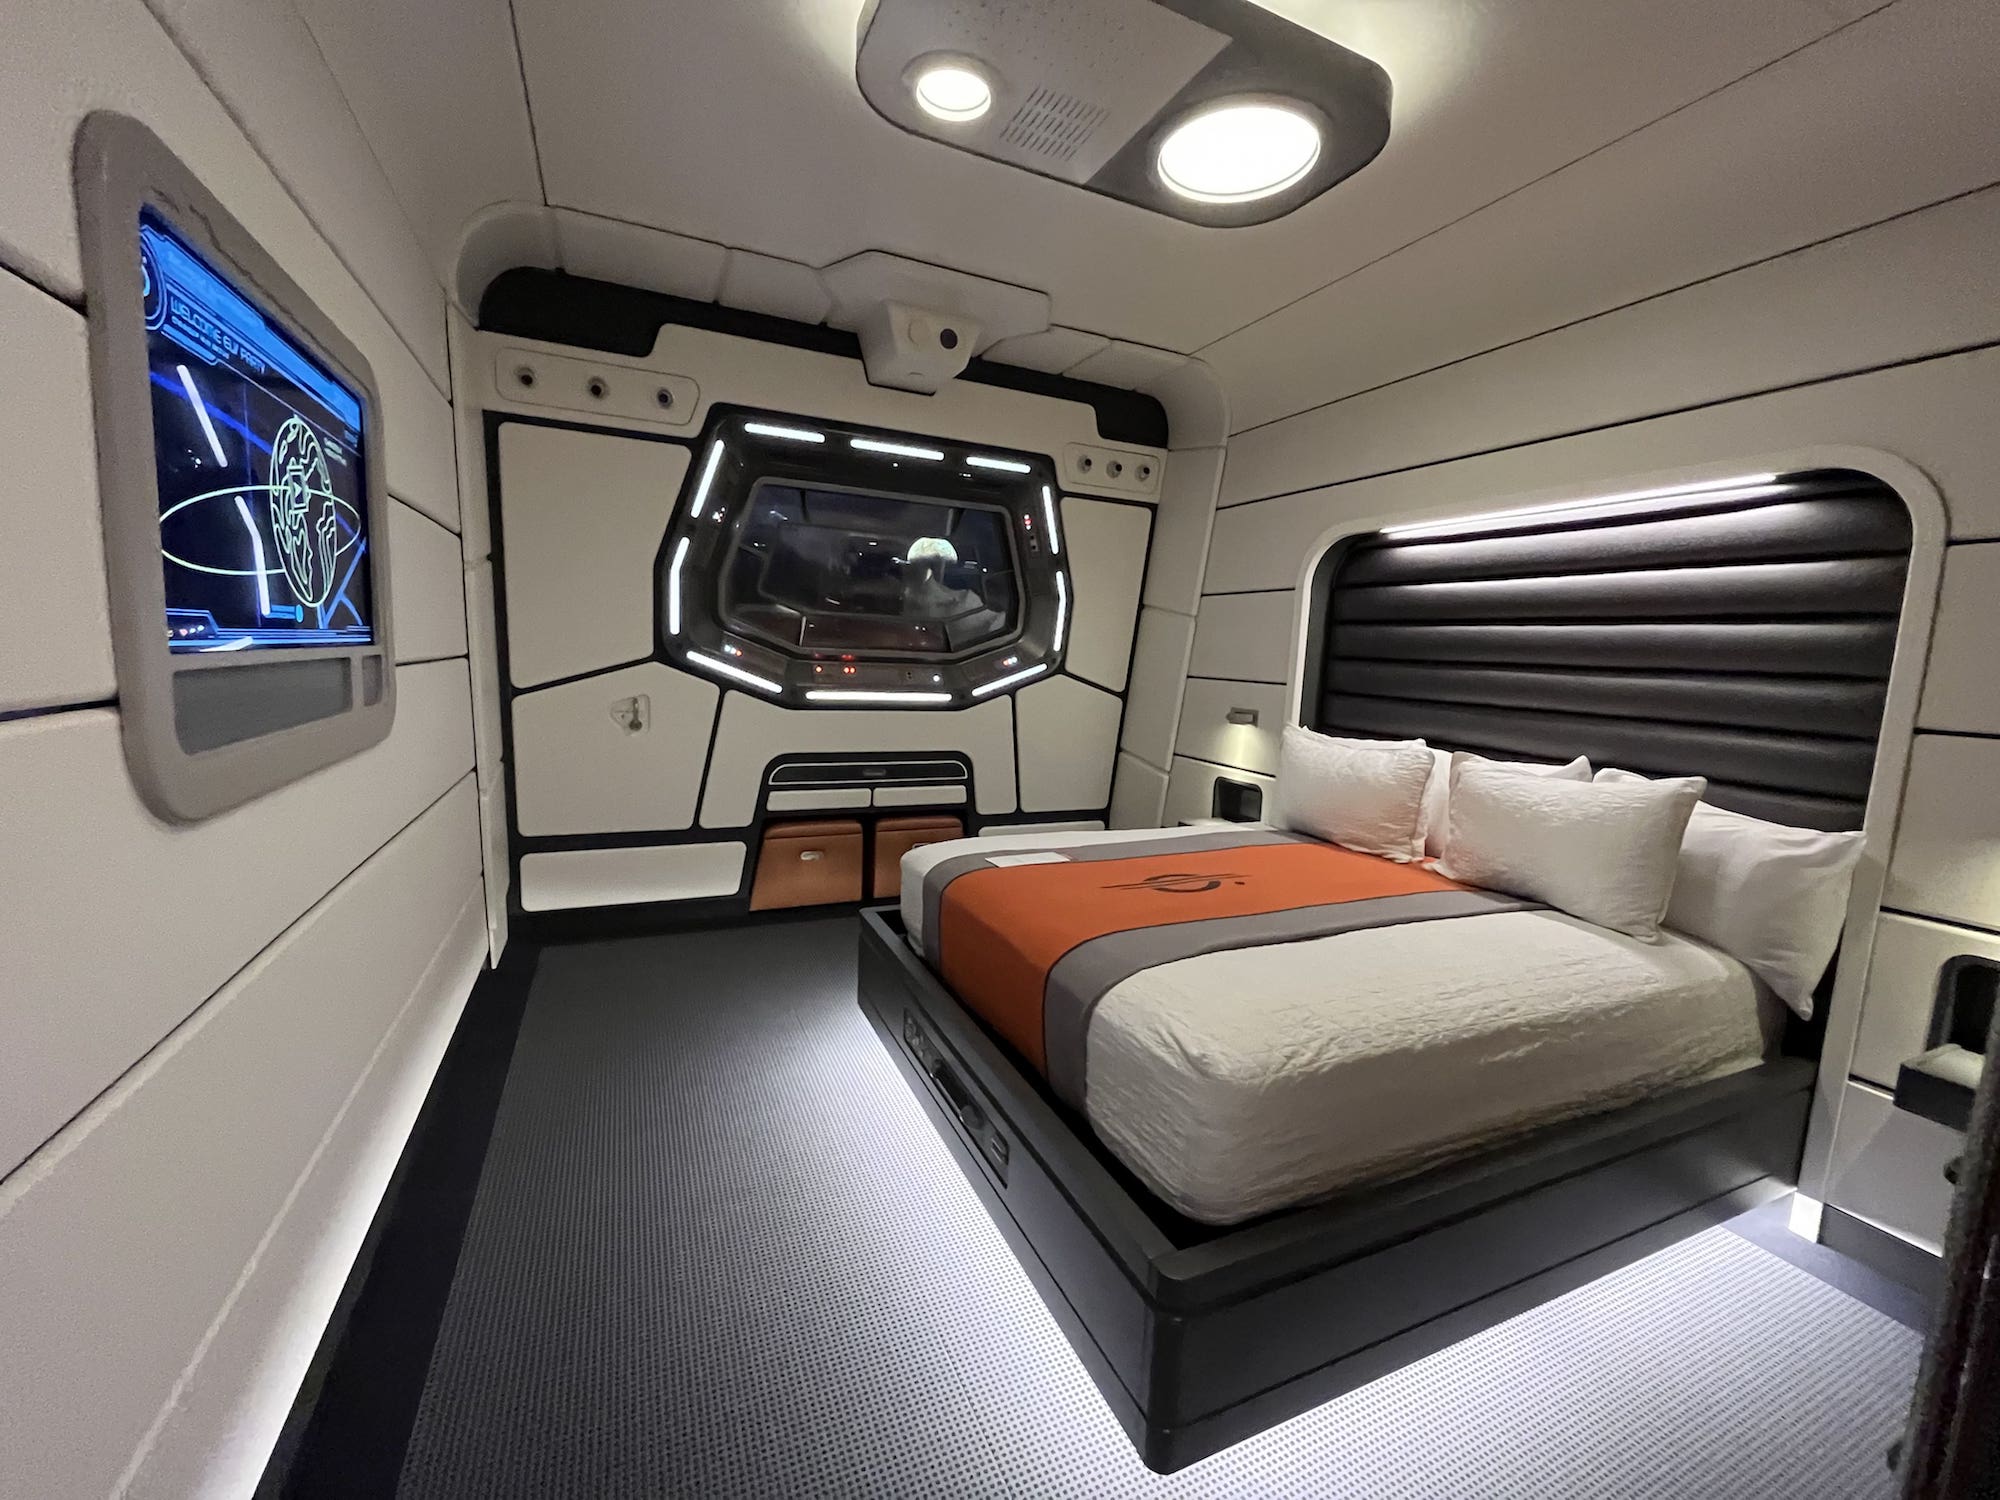 Star Wars Galactic Starcruiser Basic Cabin